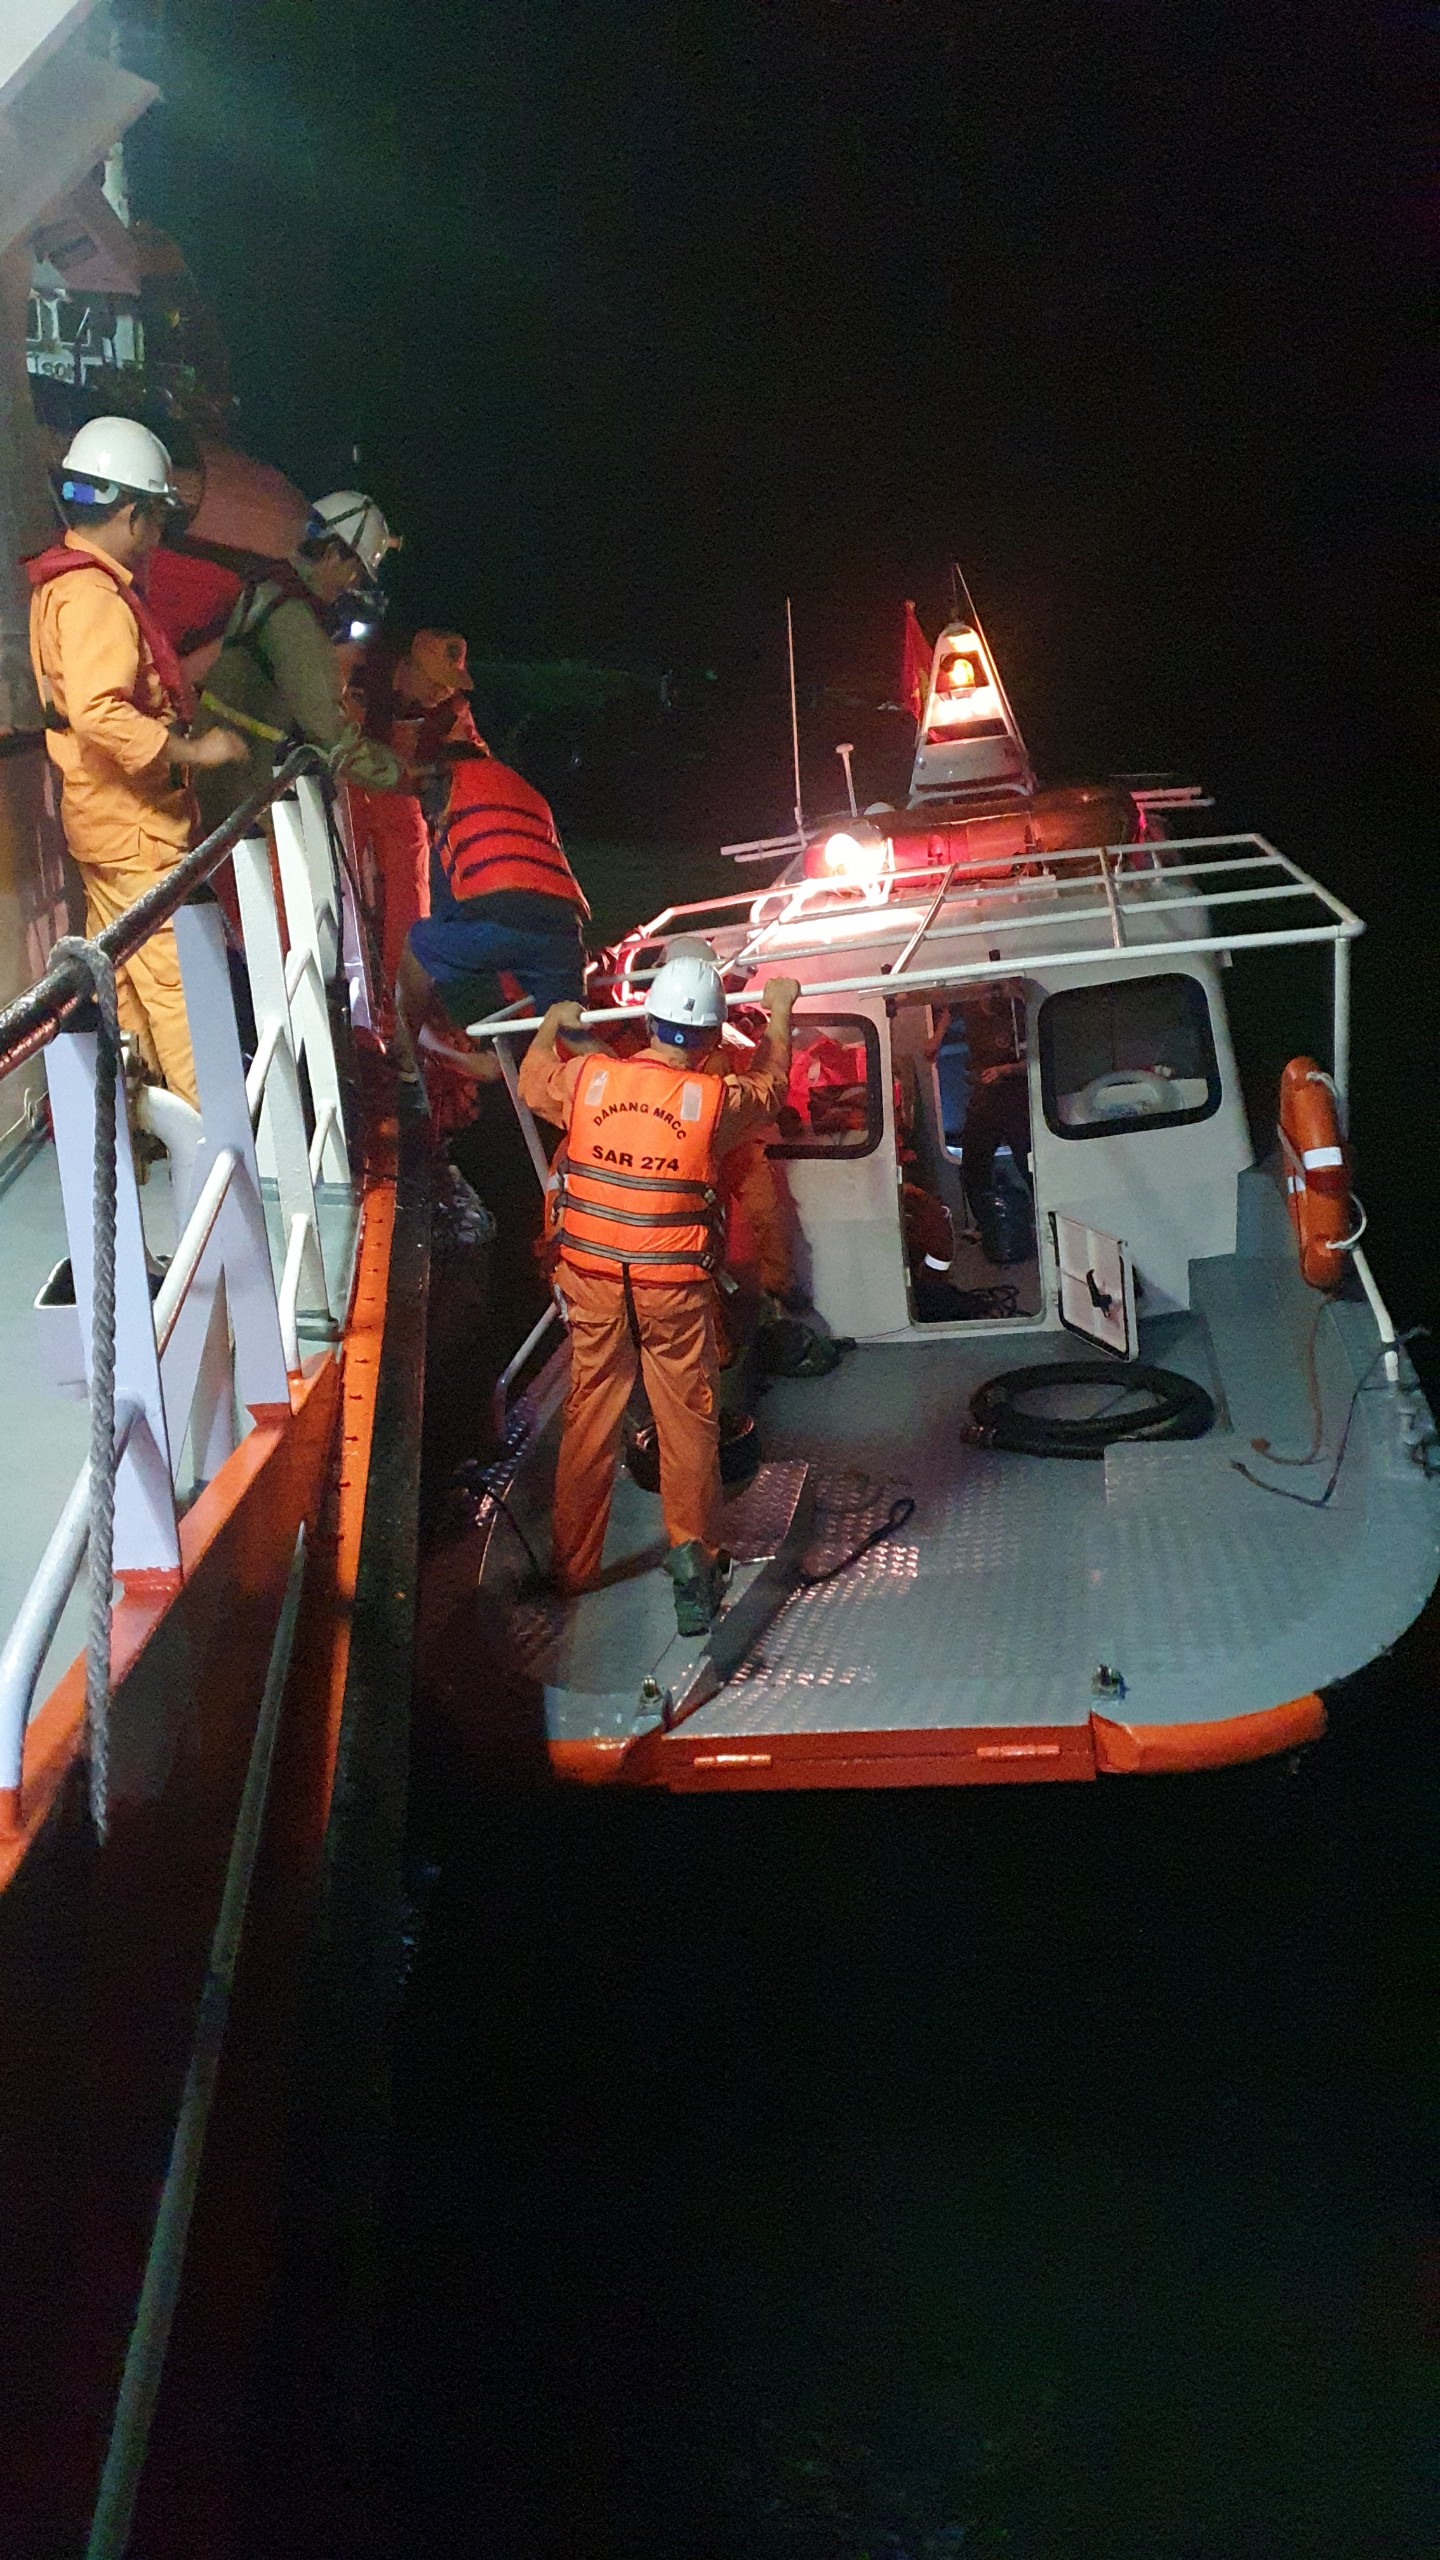 Video hiện trường cứu 9 thuyền viên tàu chở 3.400 tấn đá nguy cơ lật trên biển Đà Nẵng- Ảnh 3.